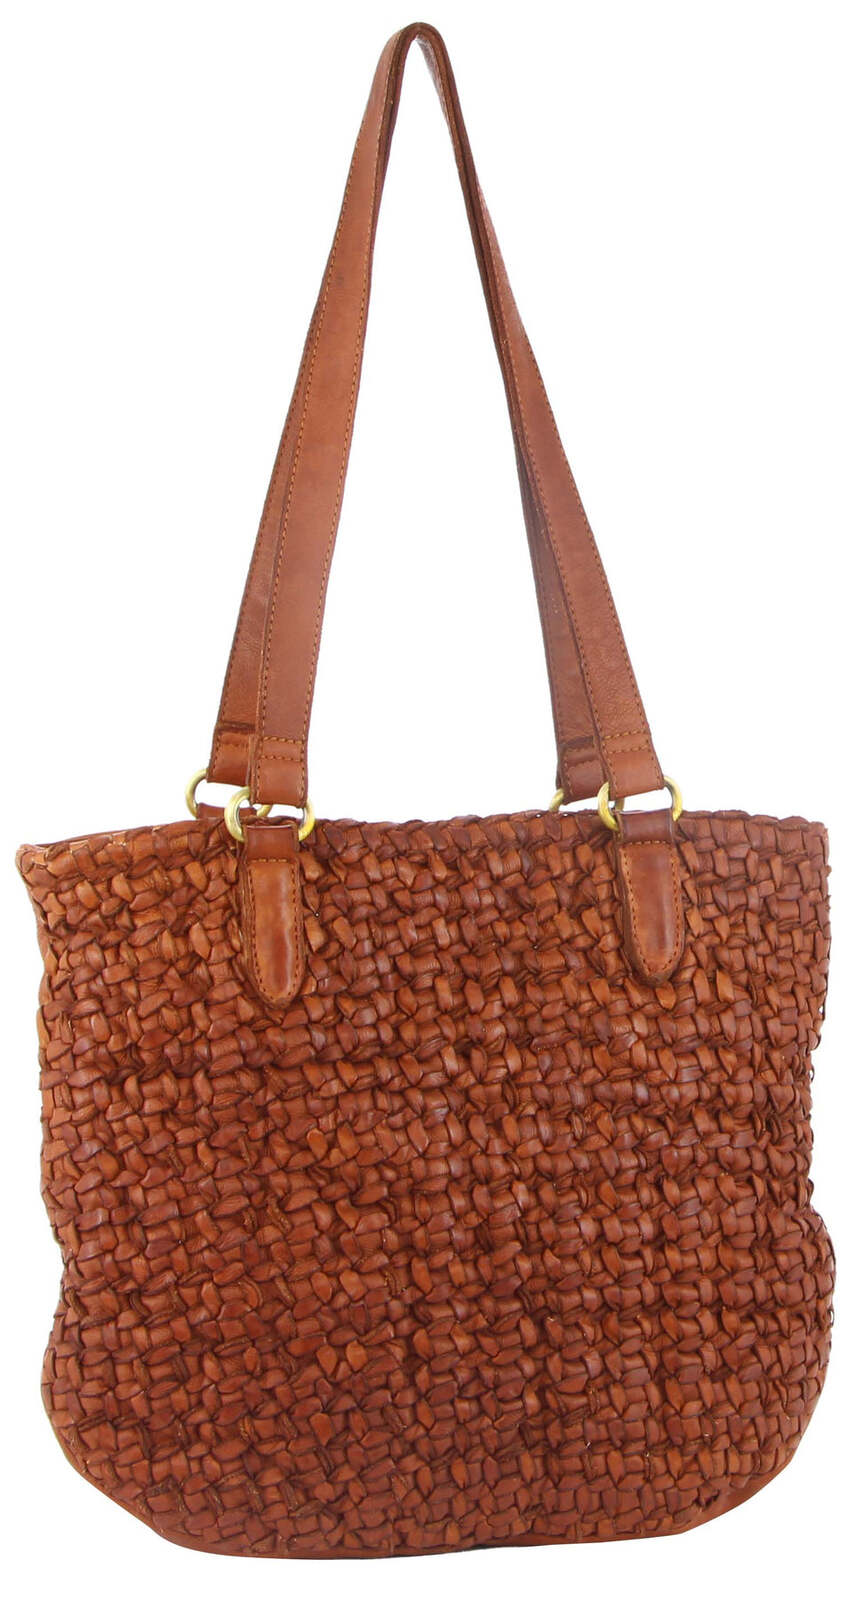 Woven Leather Ladies Shoulder Bag Travel Carry - Cognac